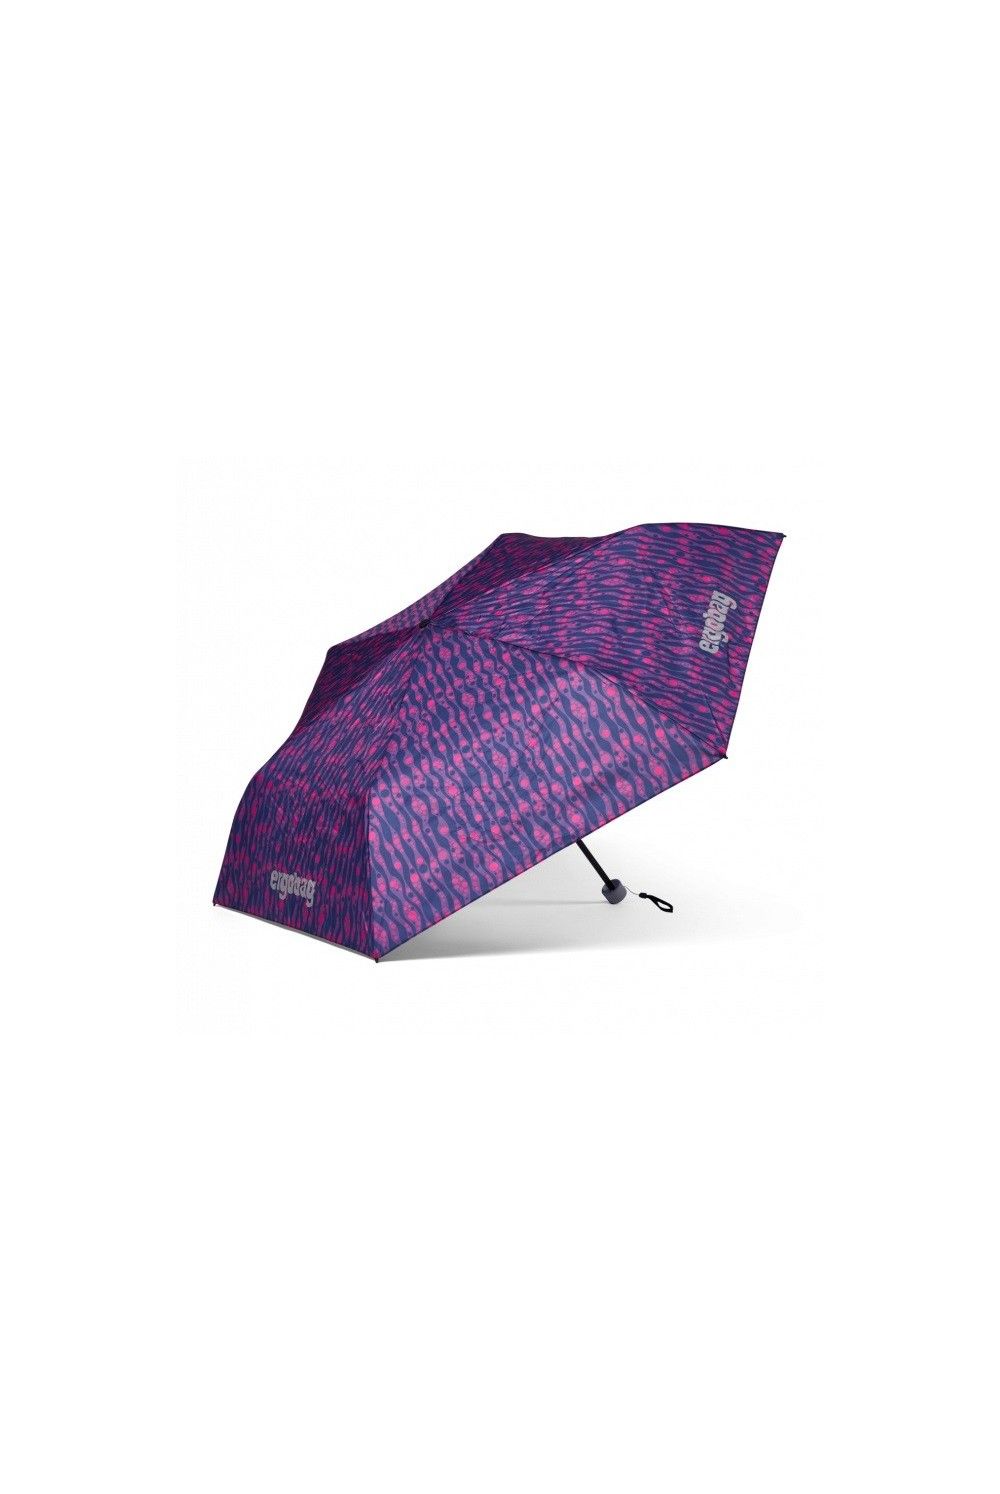 Parapluie Ergobag Bärmuda Viereck